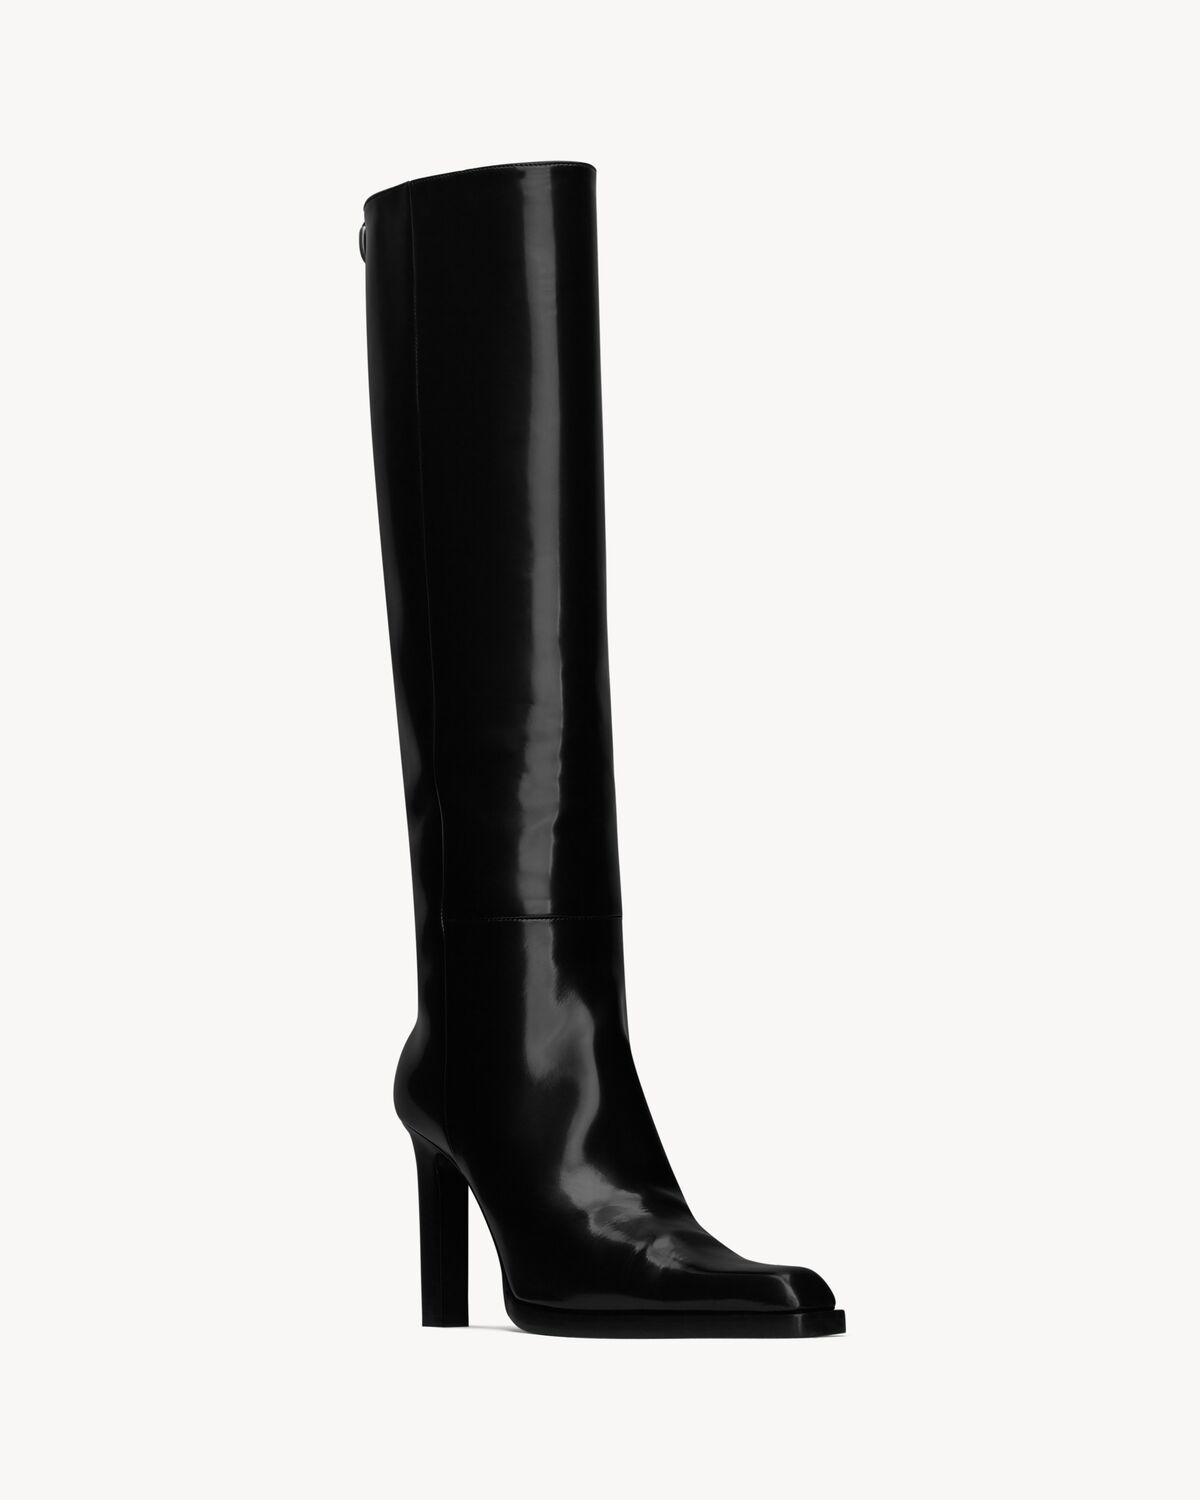 NINA high boots in glazed calfskin